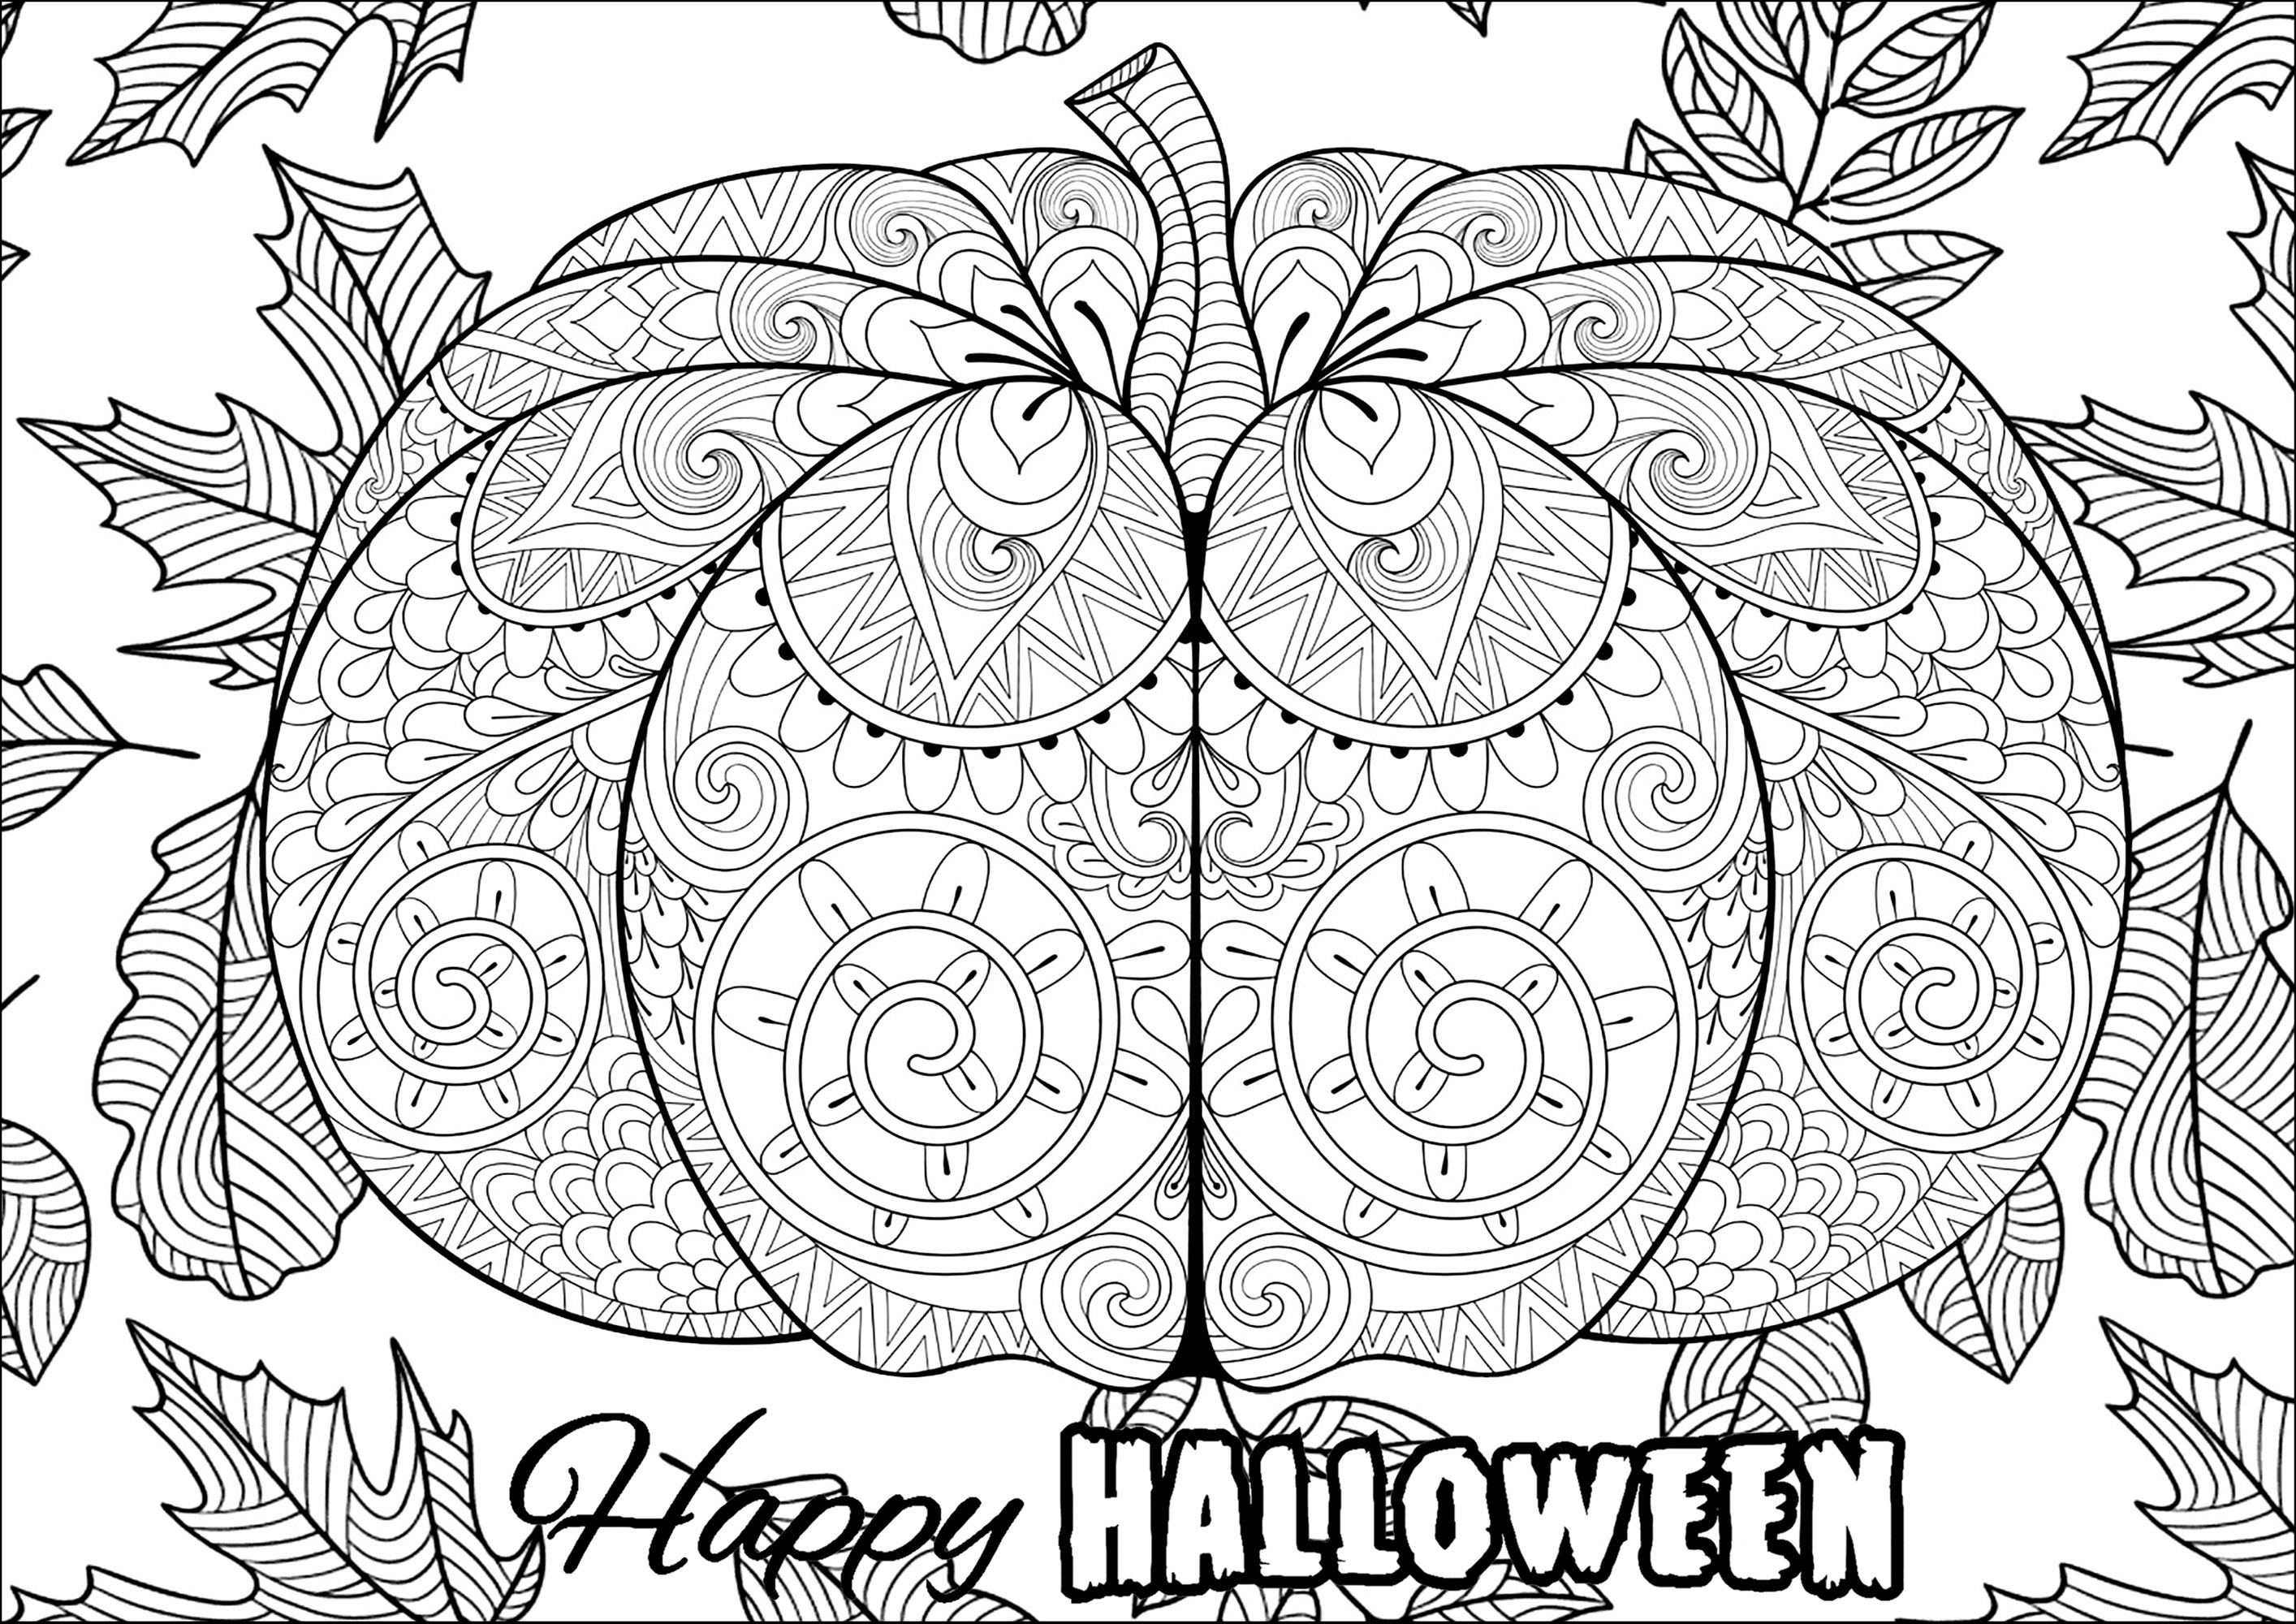 Zucca di Halloween grande con motivi e foglie. Tanti disegni da colorare, Fonte : 123rf   Artista : Ipanki